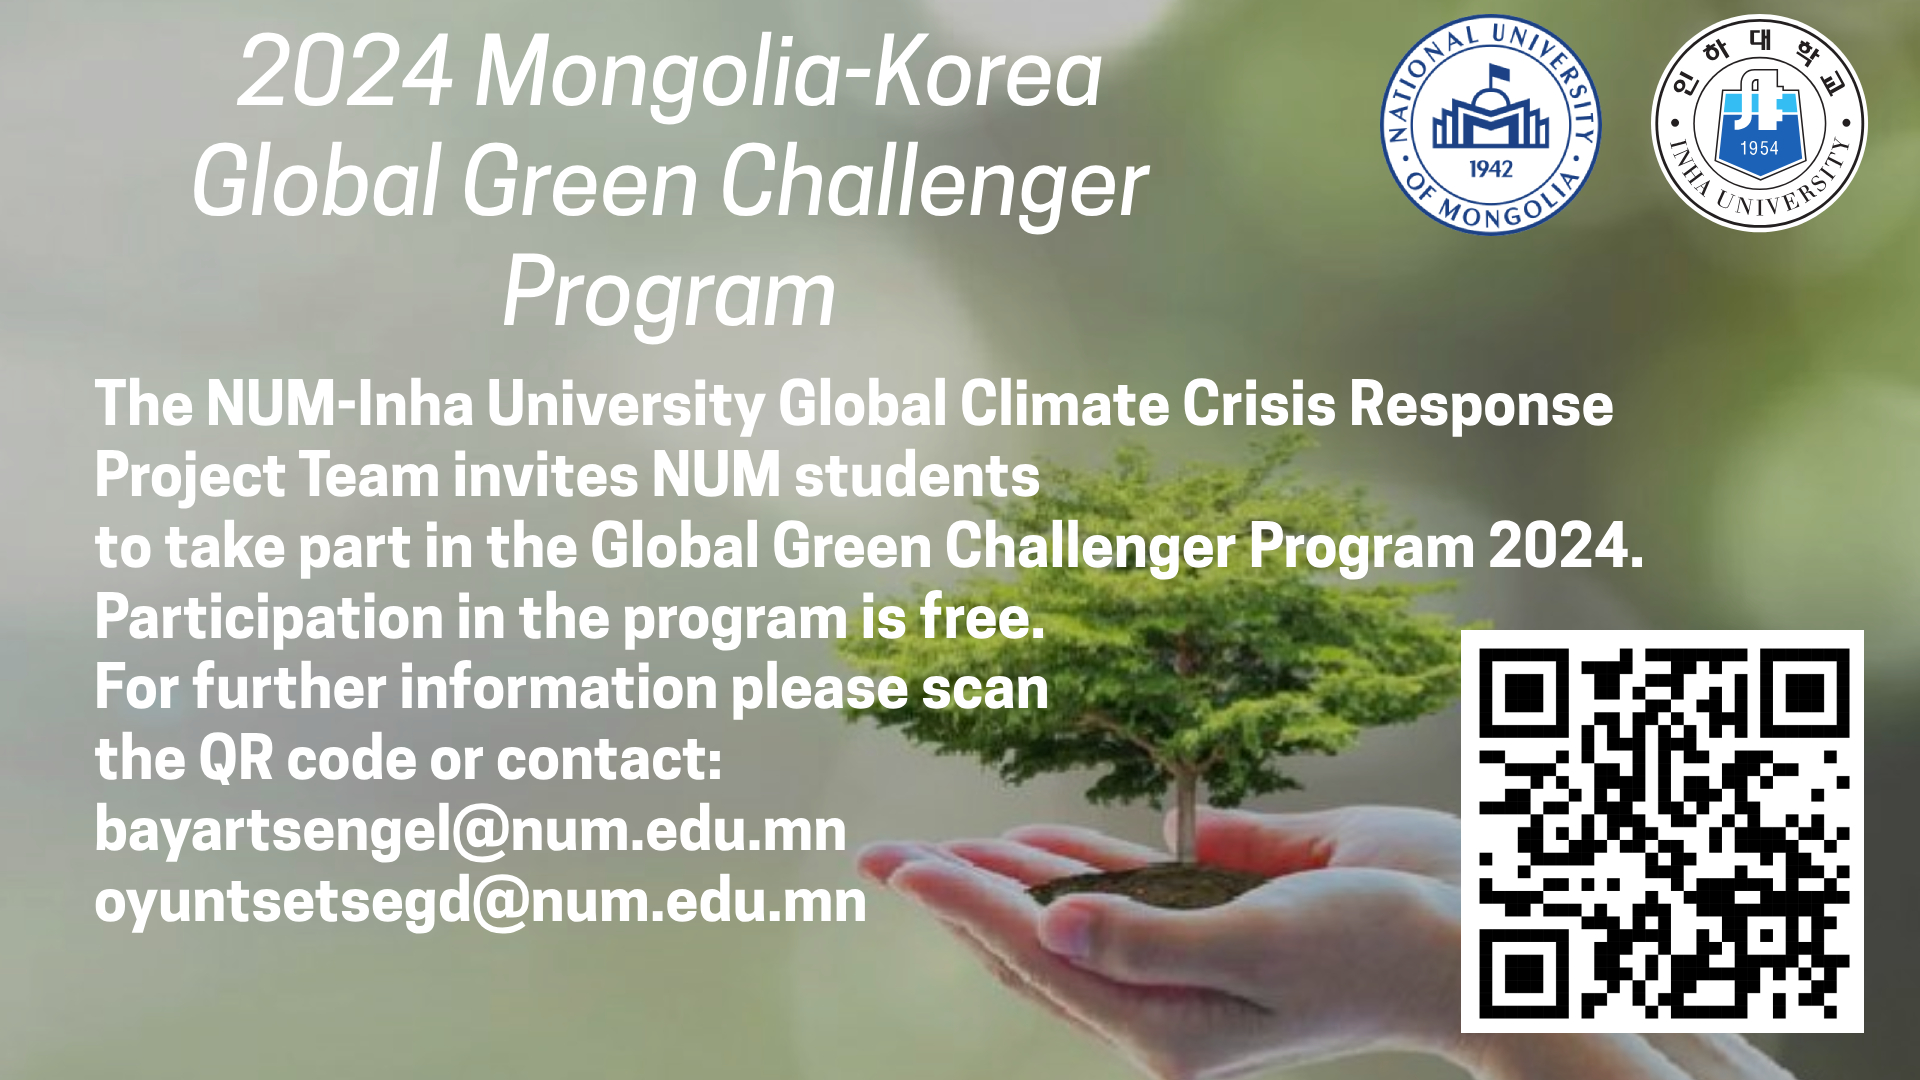 Apply for the 2024 Mongolia-Korea Global Green Challenger Program